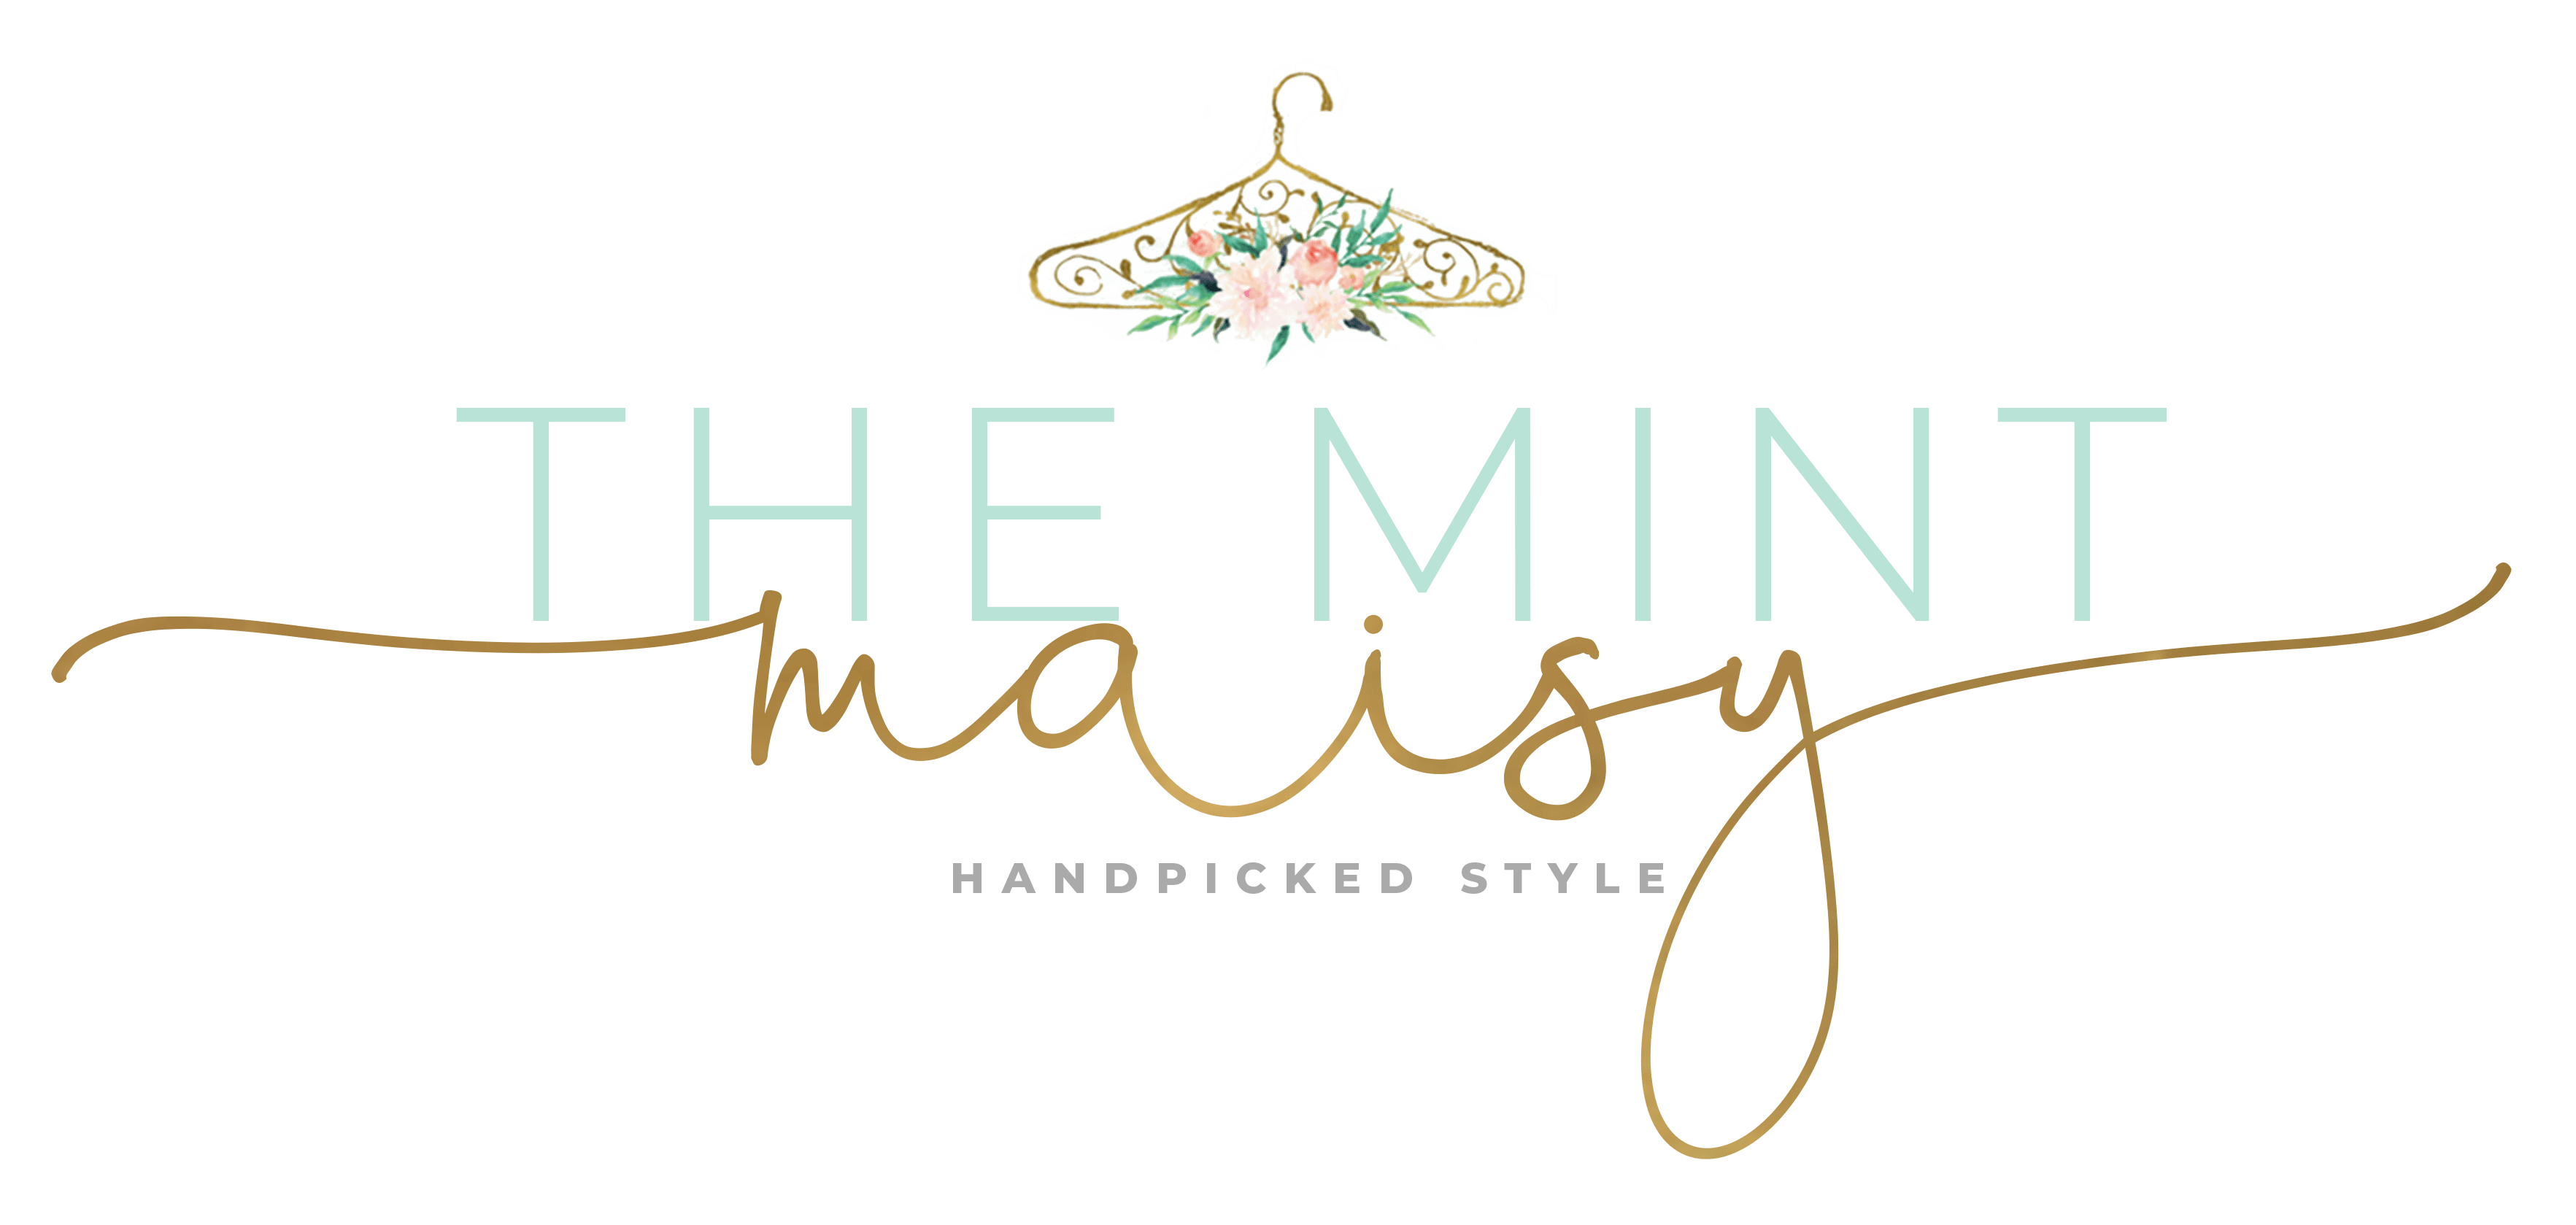 Maisy Logo - The Mint Maisy